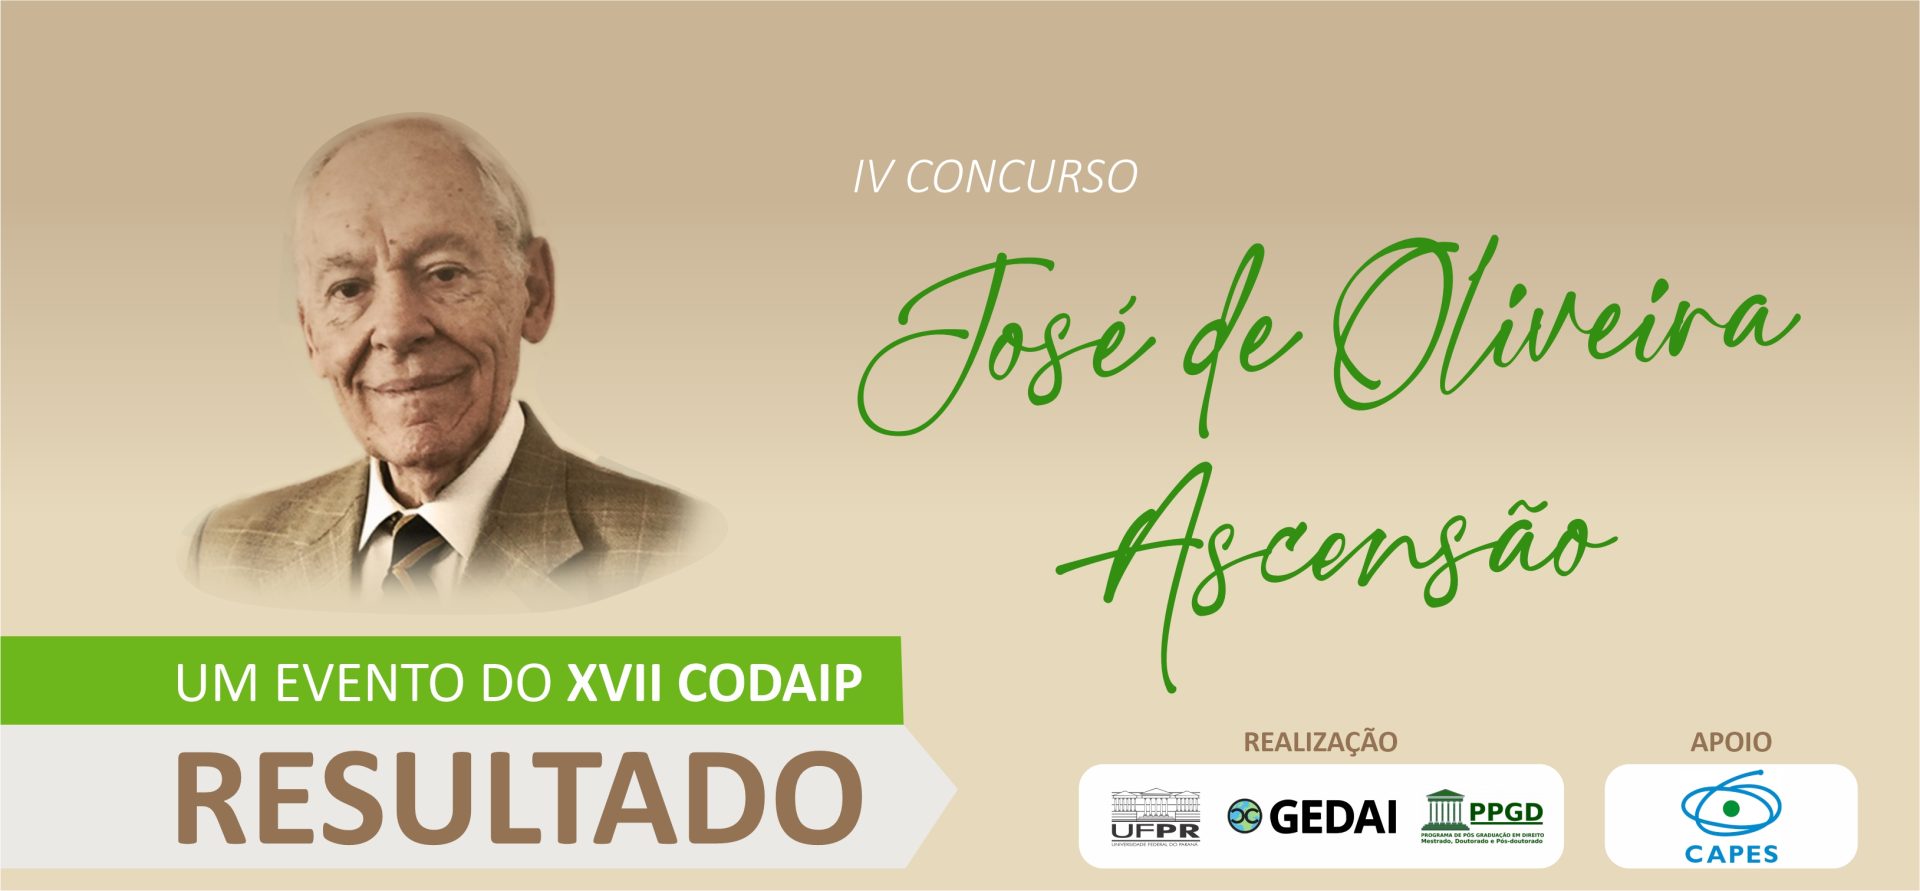 IV CONCURSO Prof. Dr. José de Oliveira Ascensão – Resultado Final